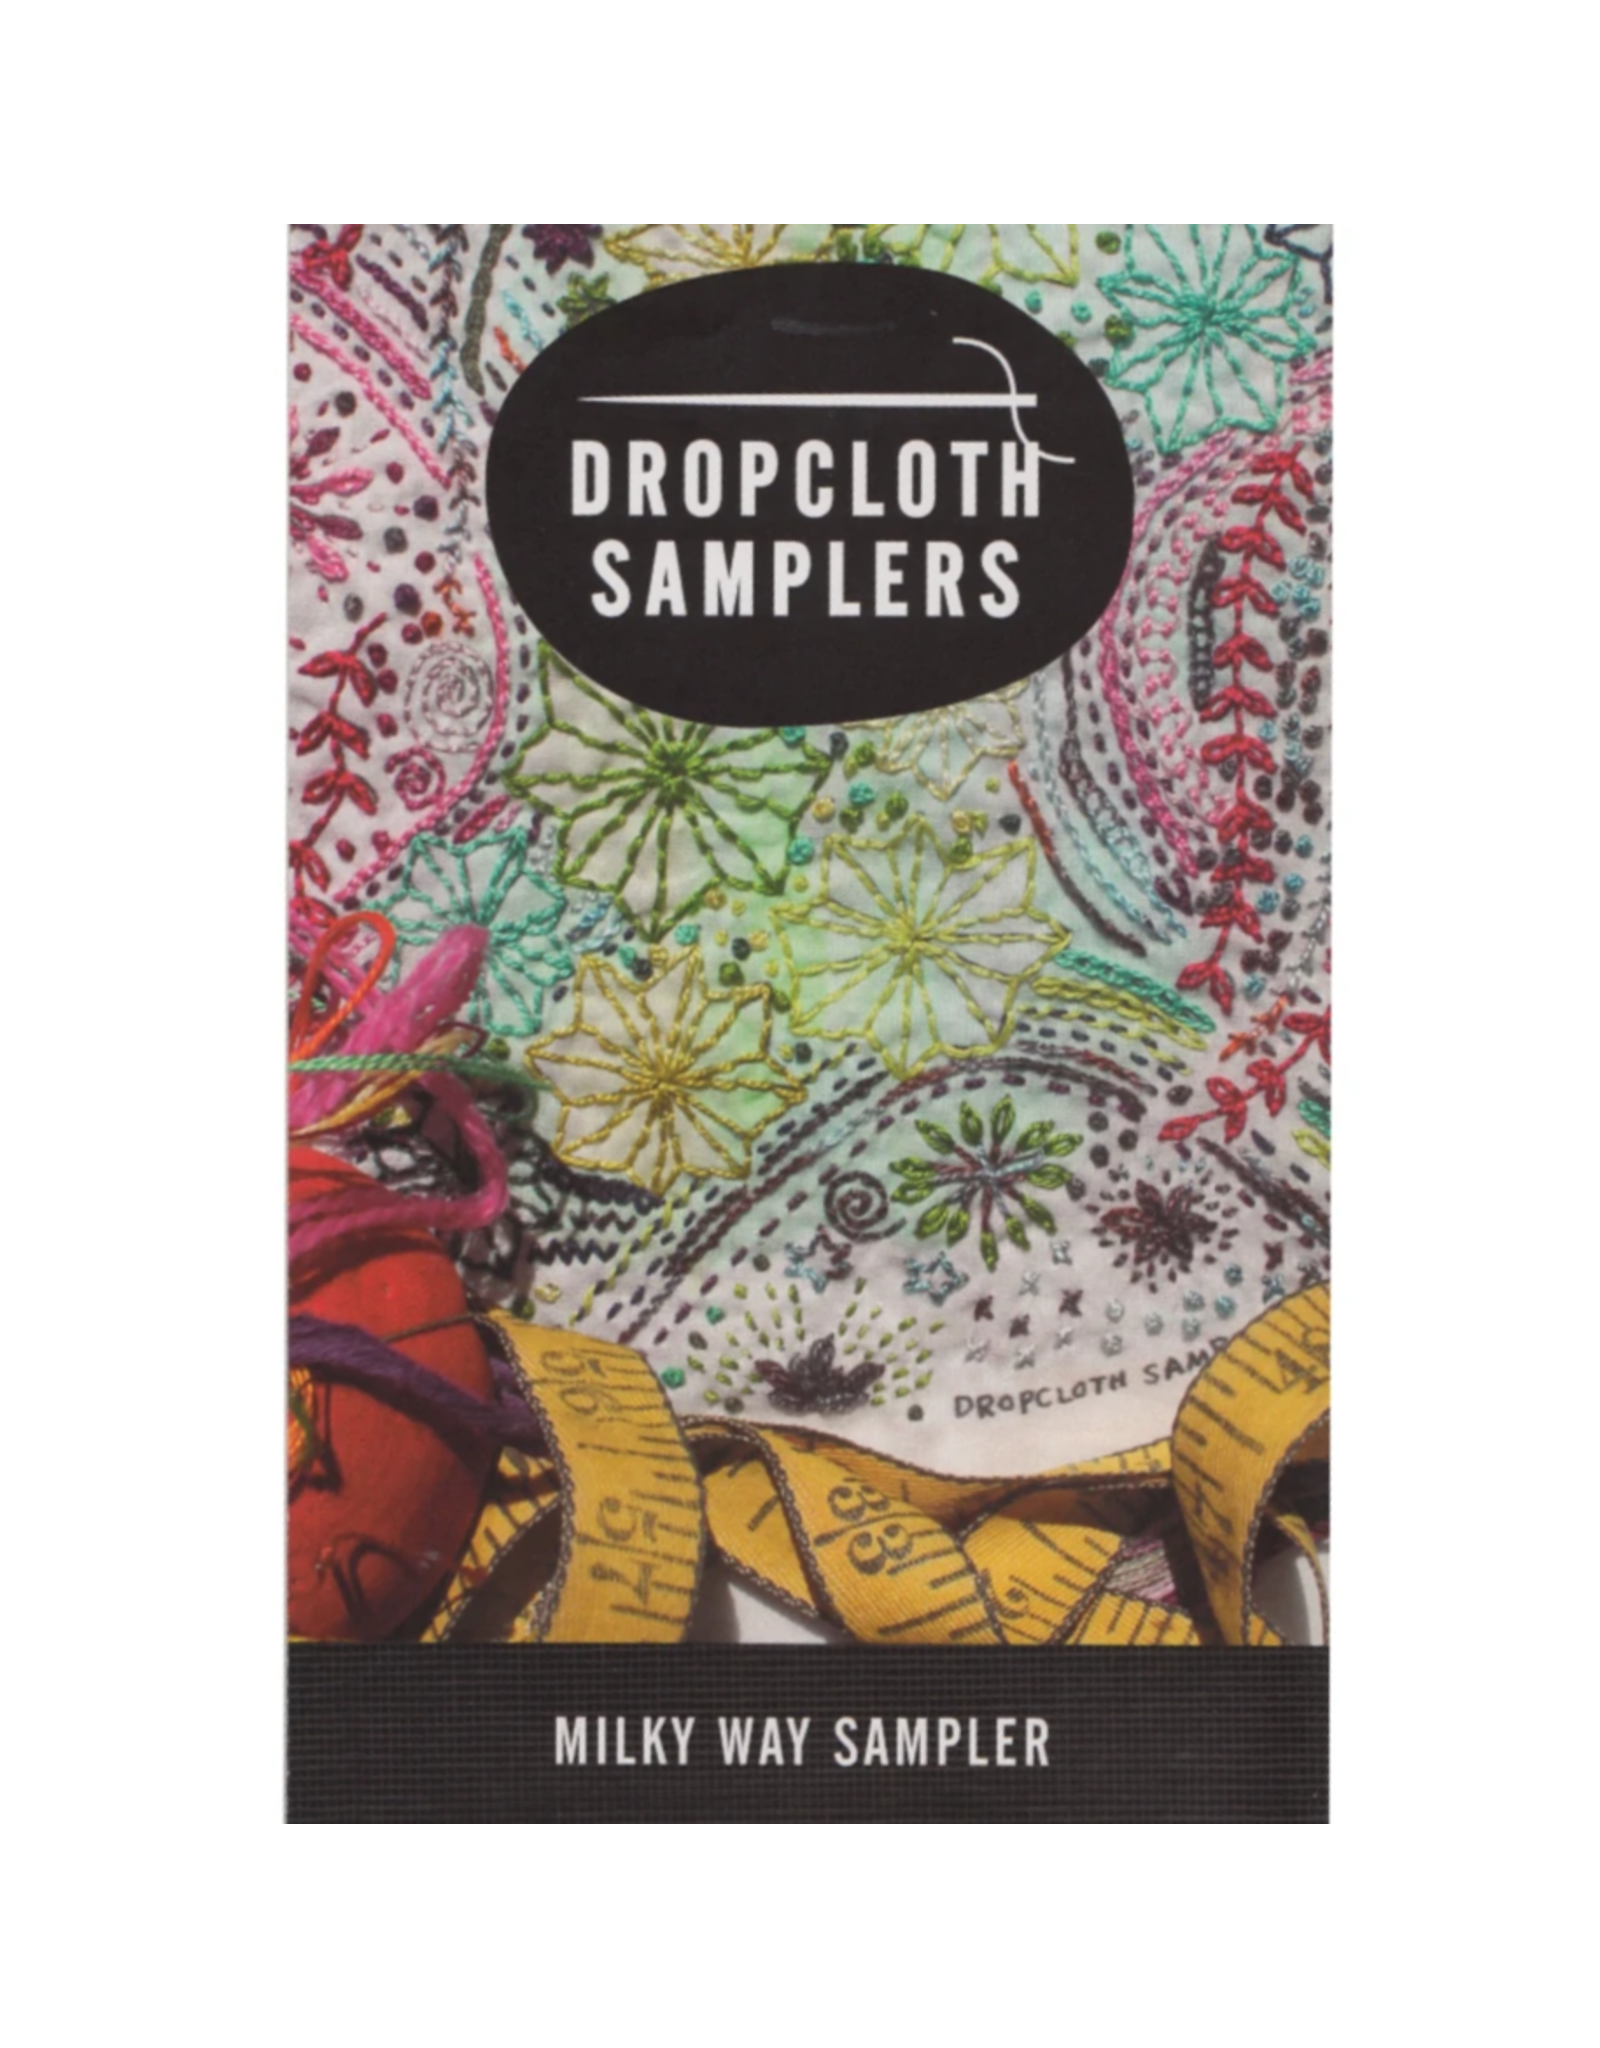 Dropcloth Samplers Milky Way Sampler,  Embroidery Sampler from Dropcloth Samplers